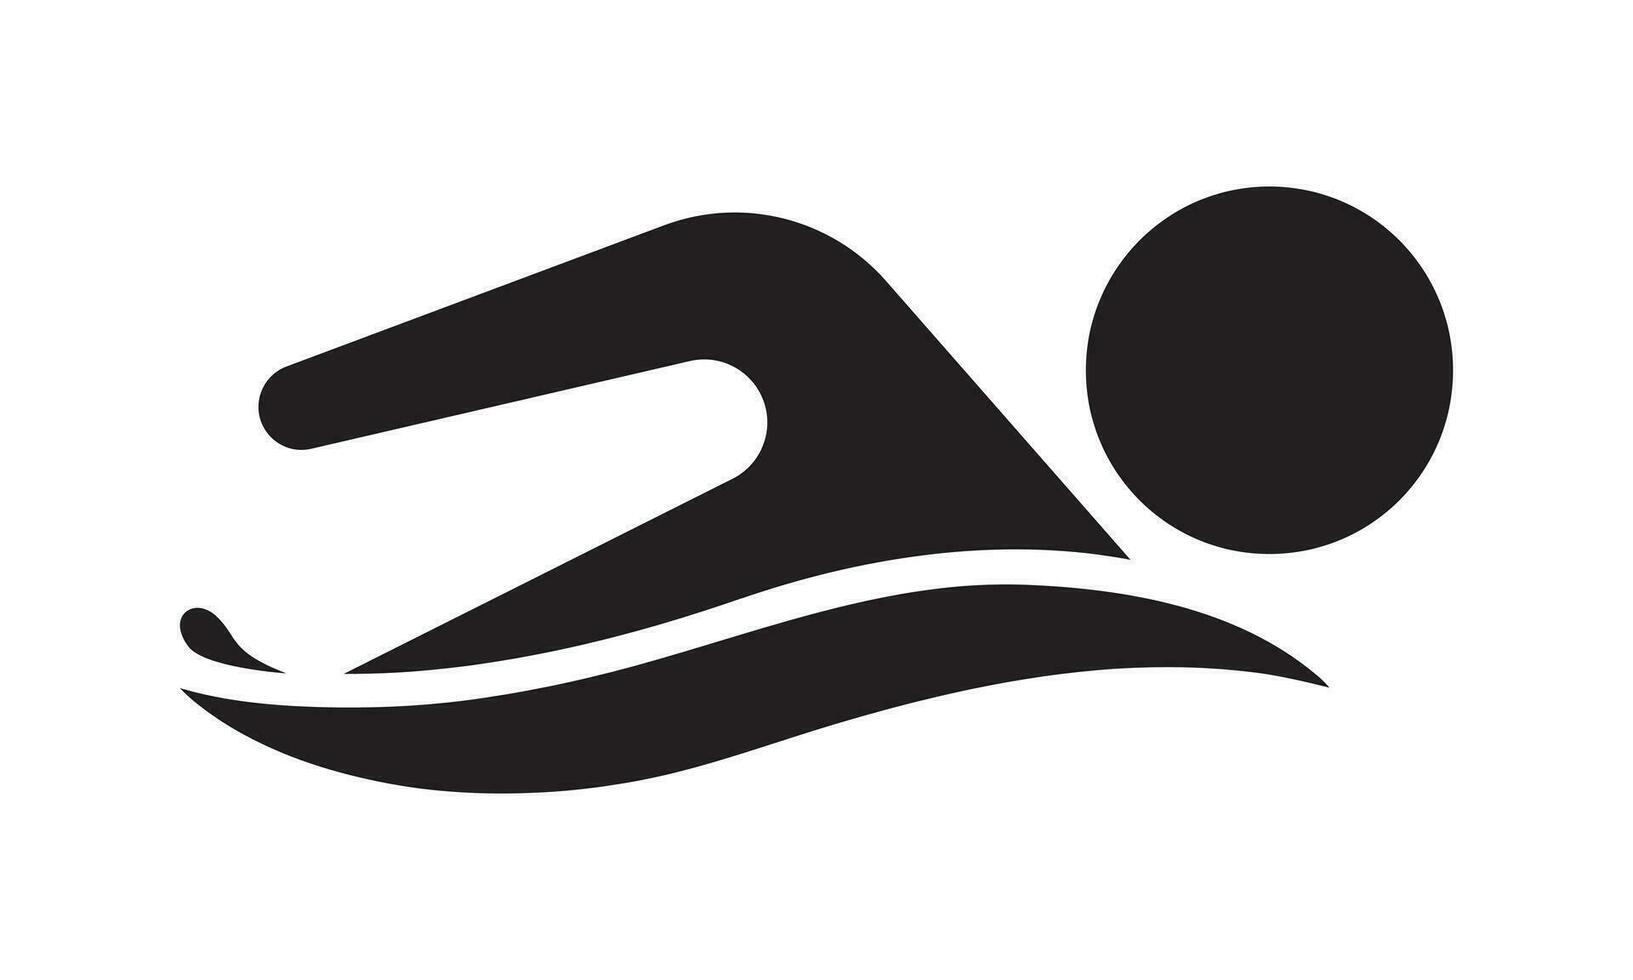 simma logotyp för Ansökan eller hemsida. simning mästerskap ikon. vektor